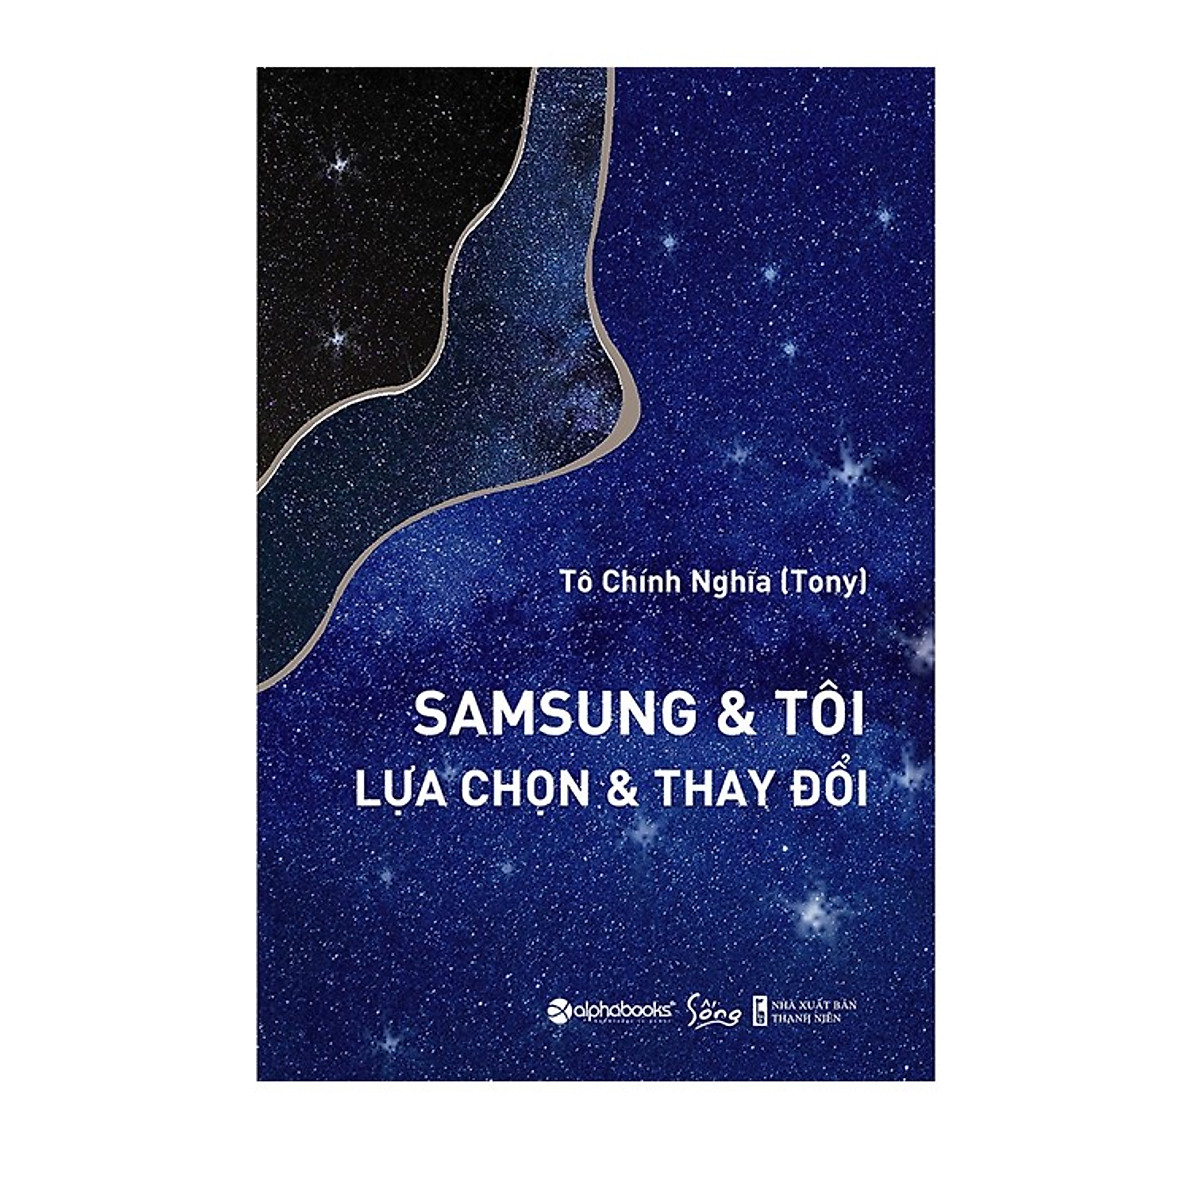 Combo Sách : Lee Kun Hee - Những Lựa Chọn Chiến Lược Và Kỳ Tích Samsung + SamSung & Tôi - Lựa Chọn & Thay Đổi